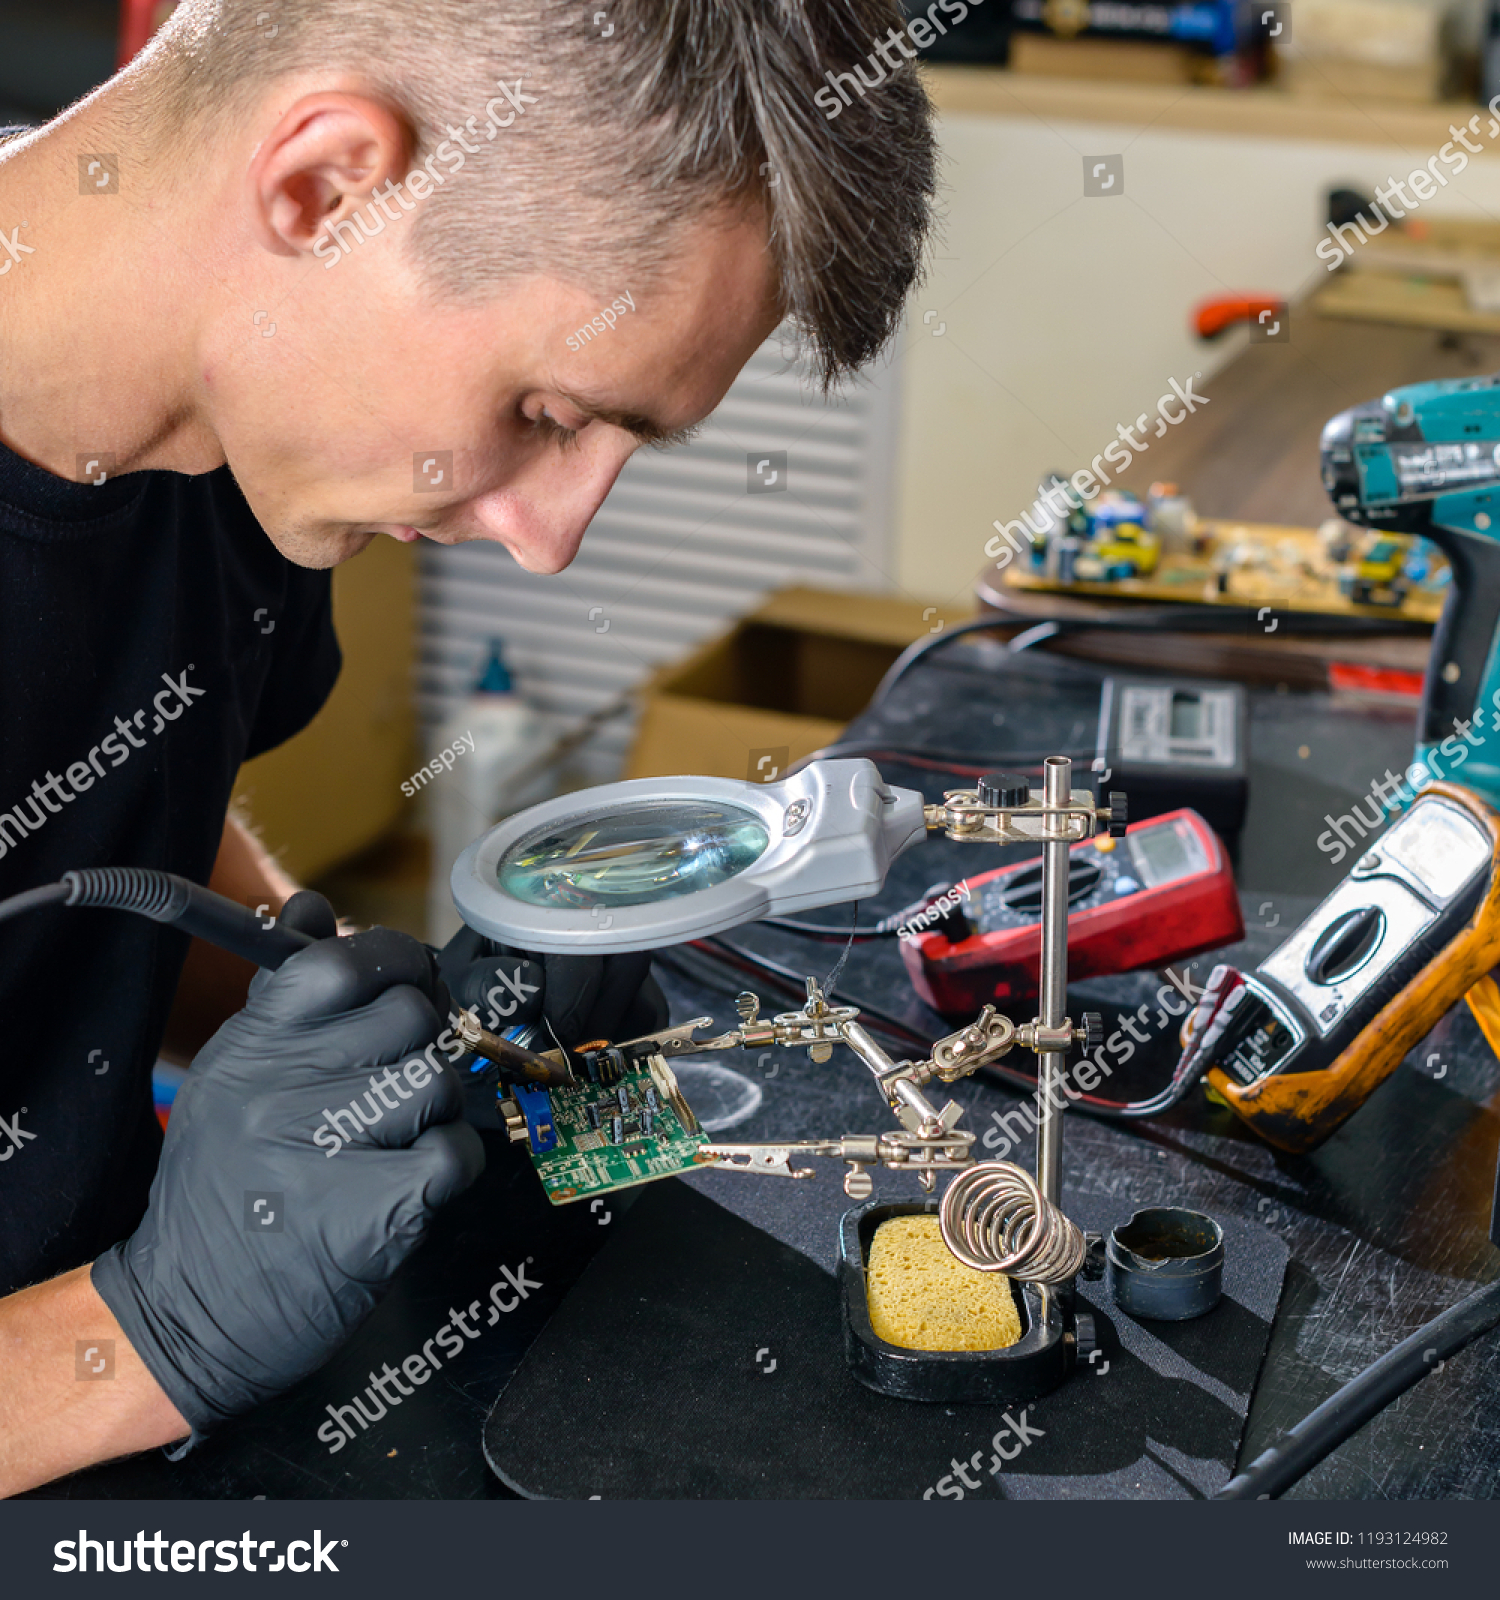 Close up. Men Repairing Hardware Equipment in Workshop. Repair Shop #1193124982